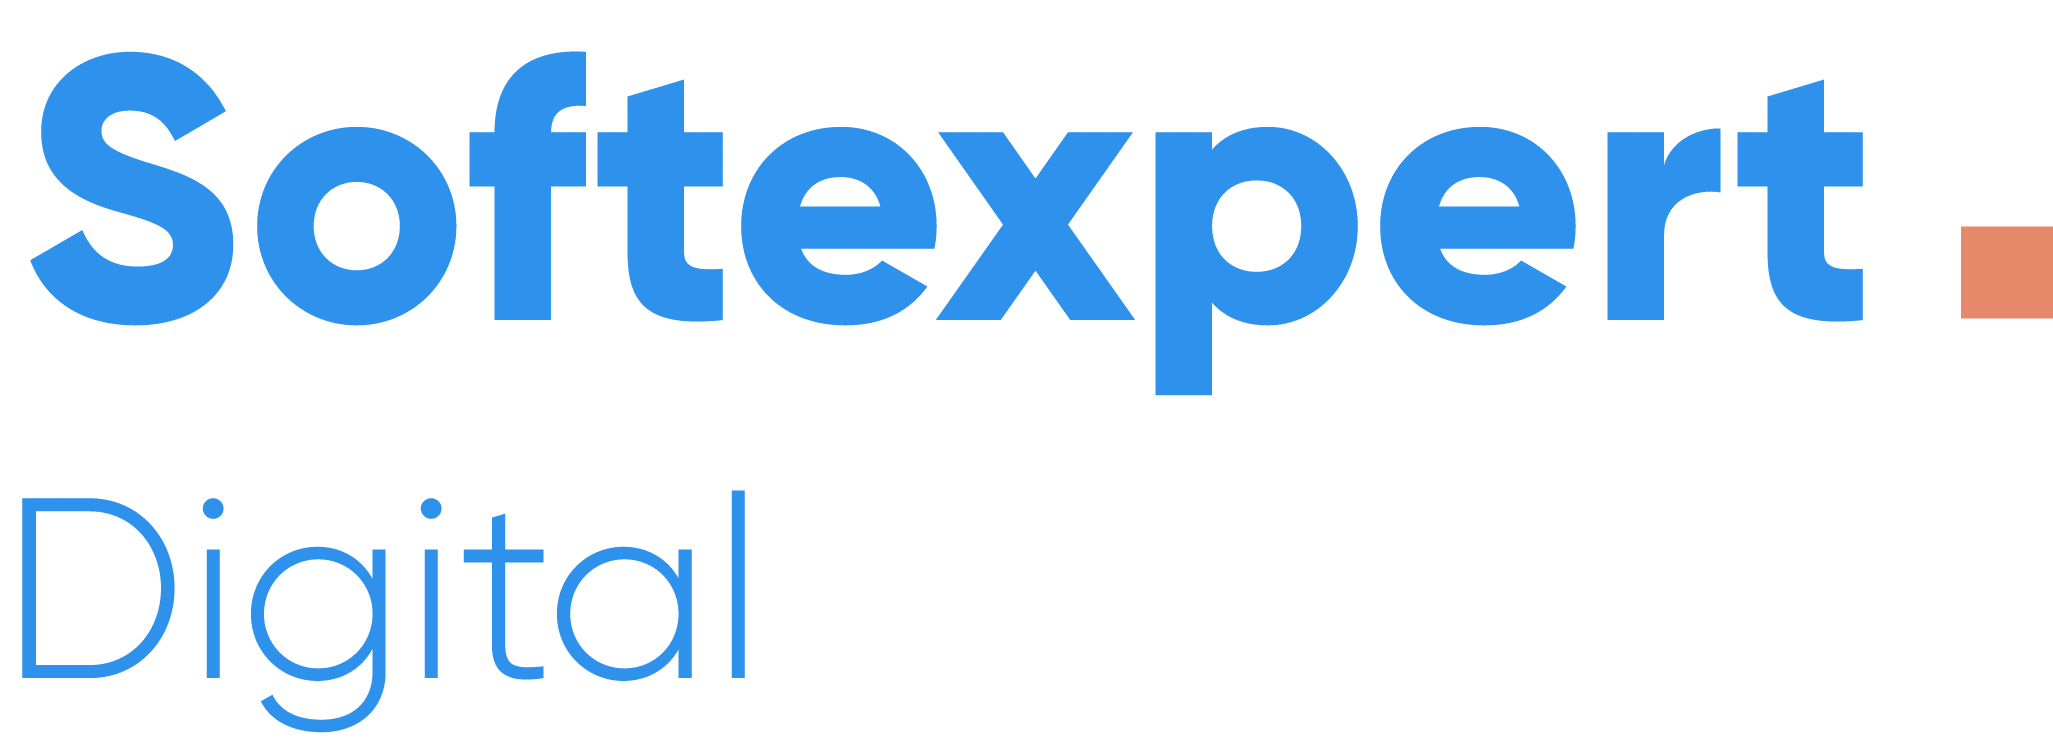 softexpert-logo